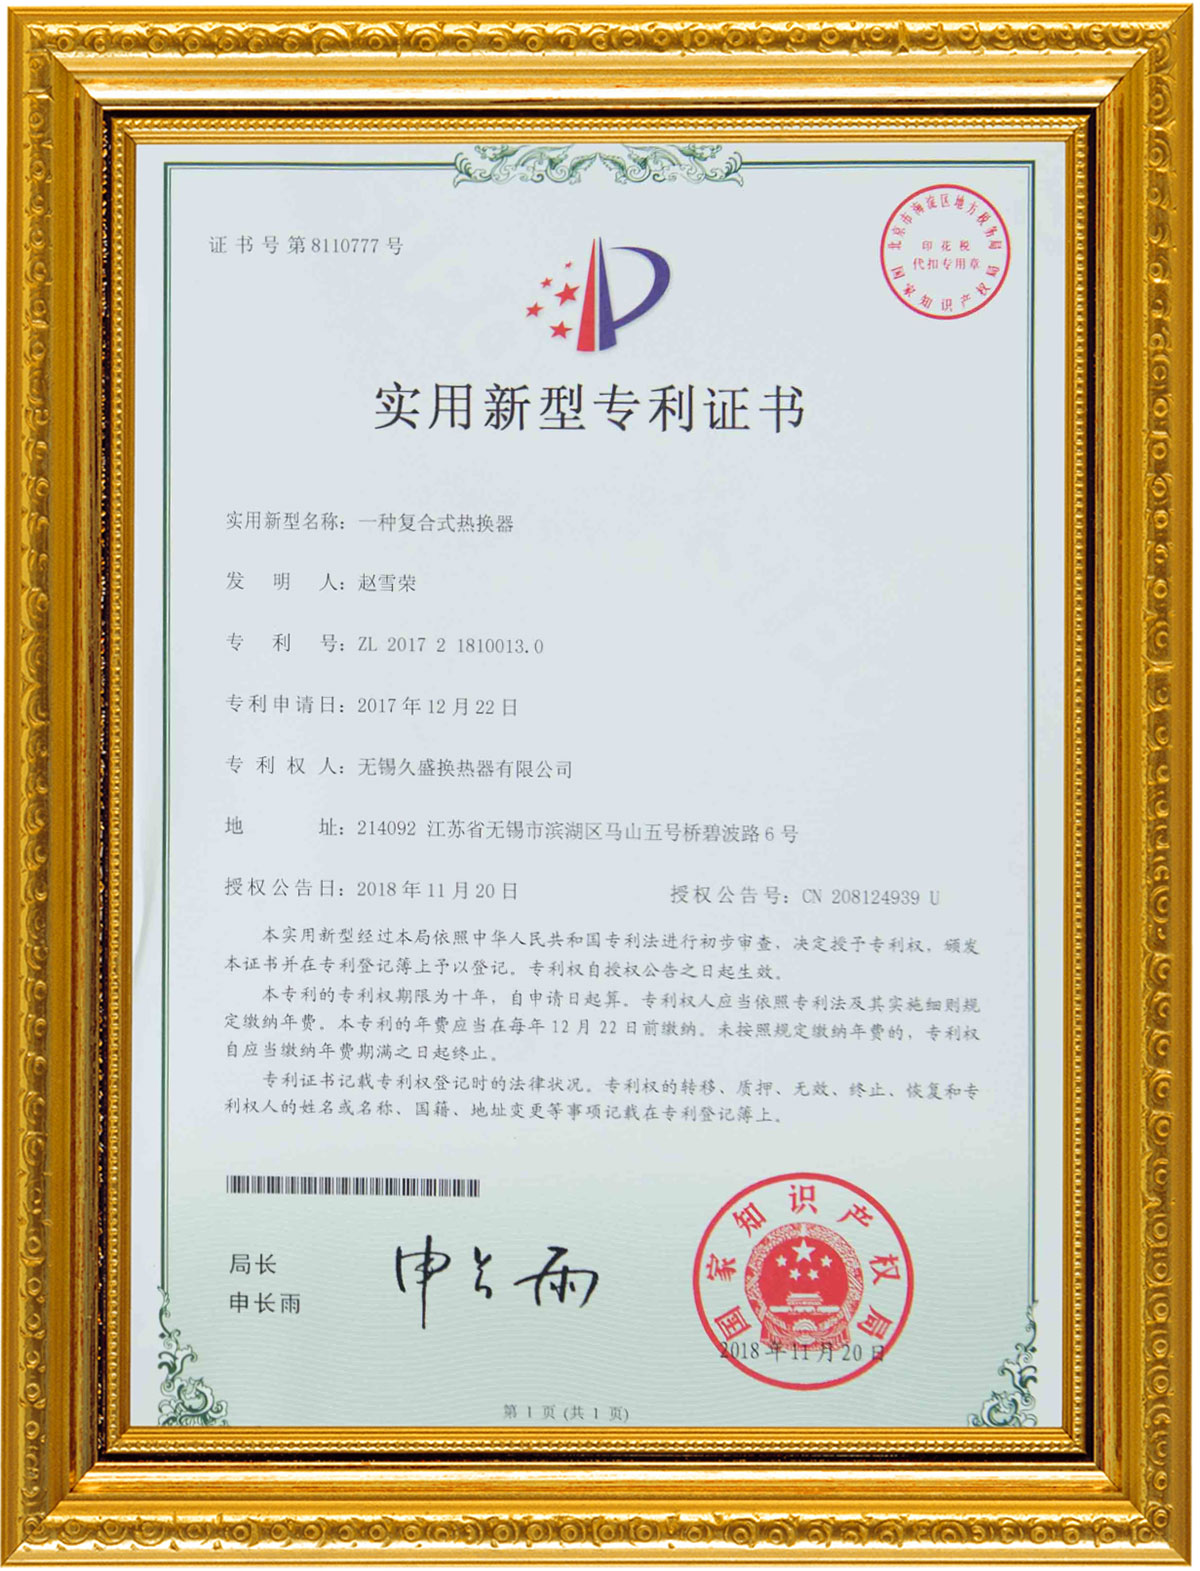 сертификат655г